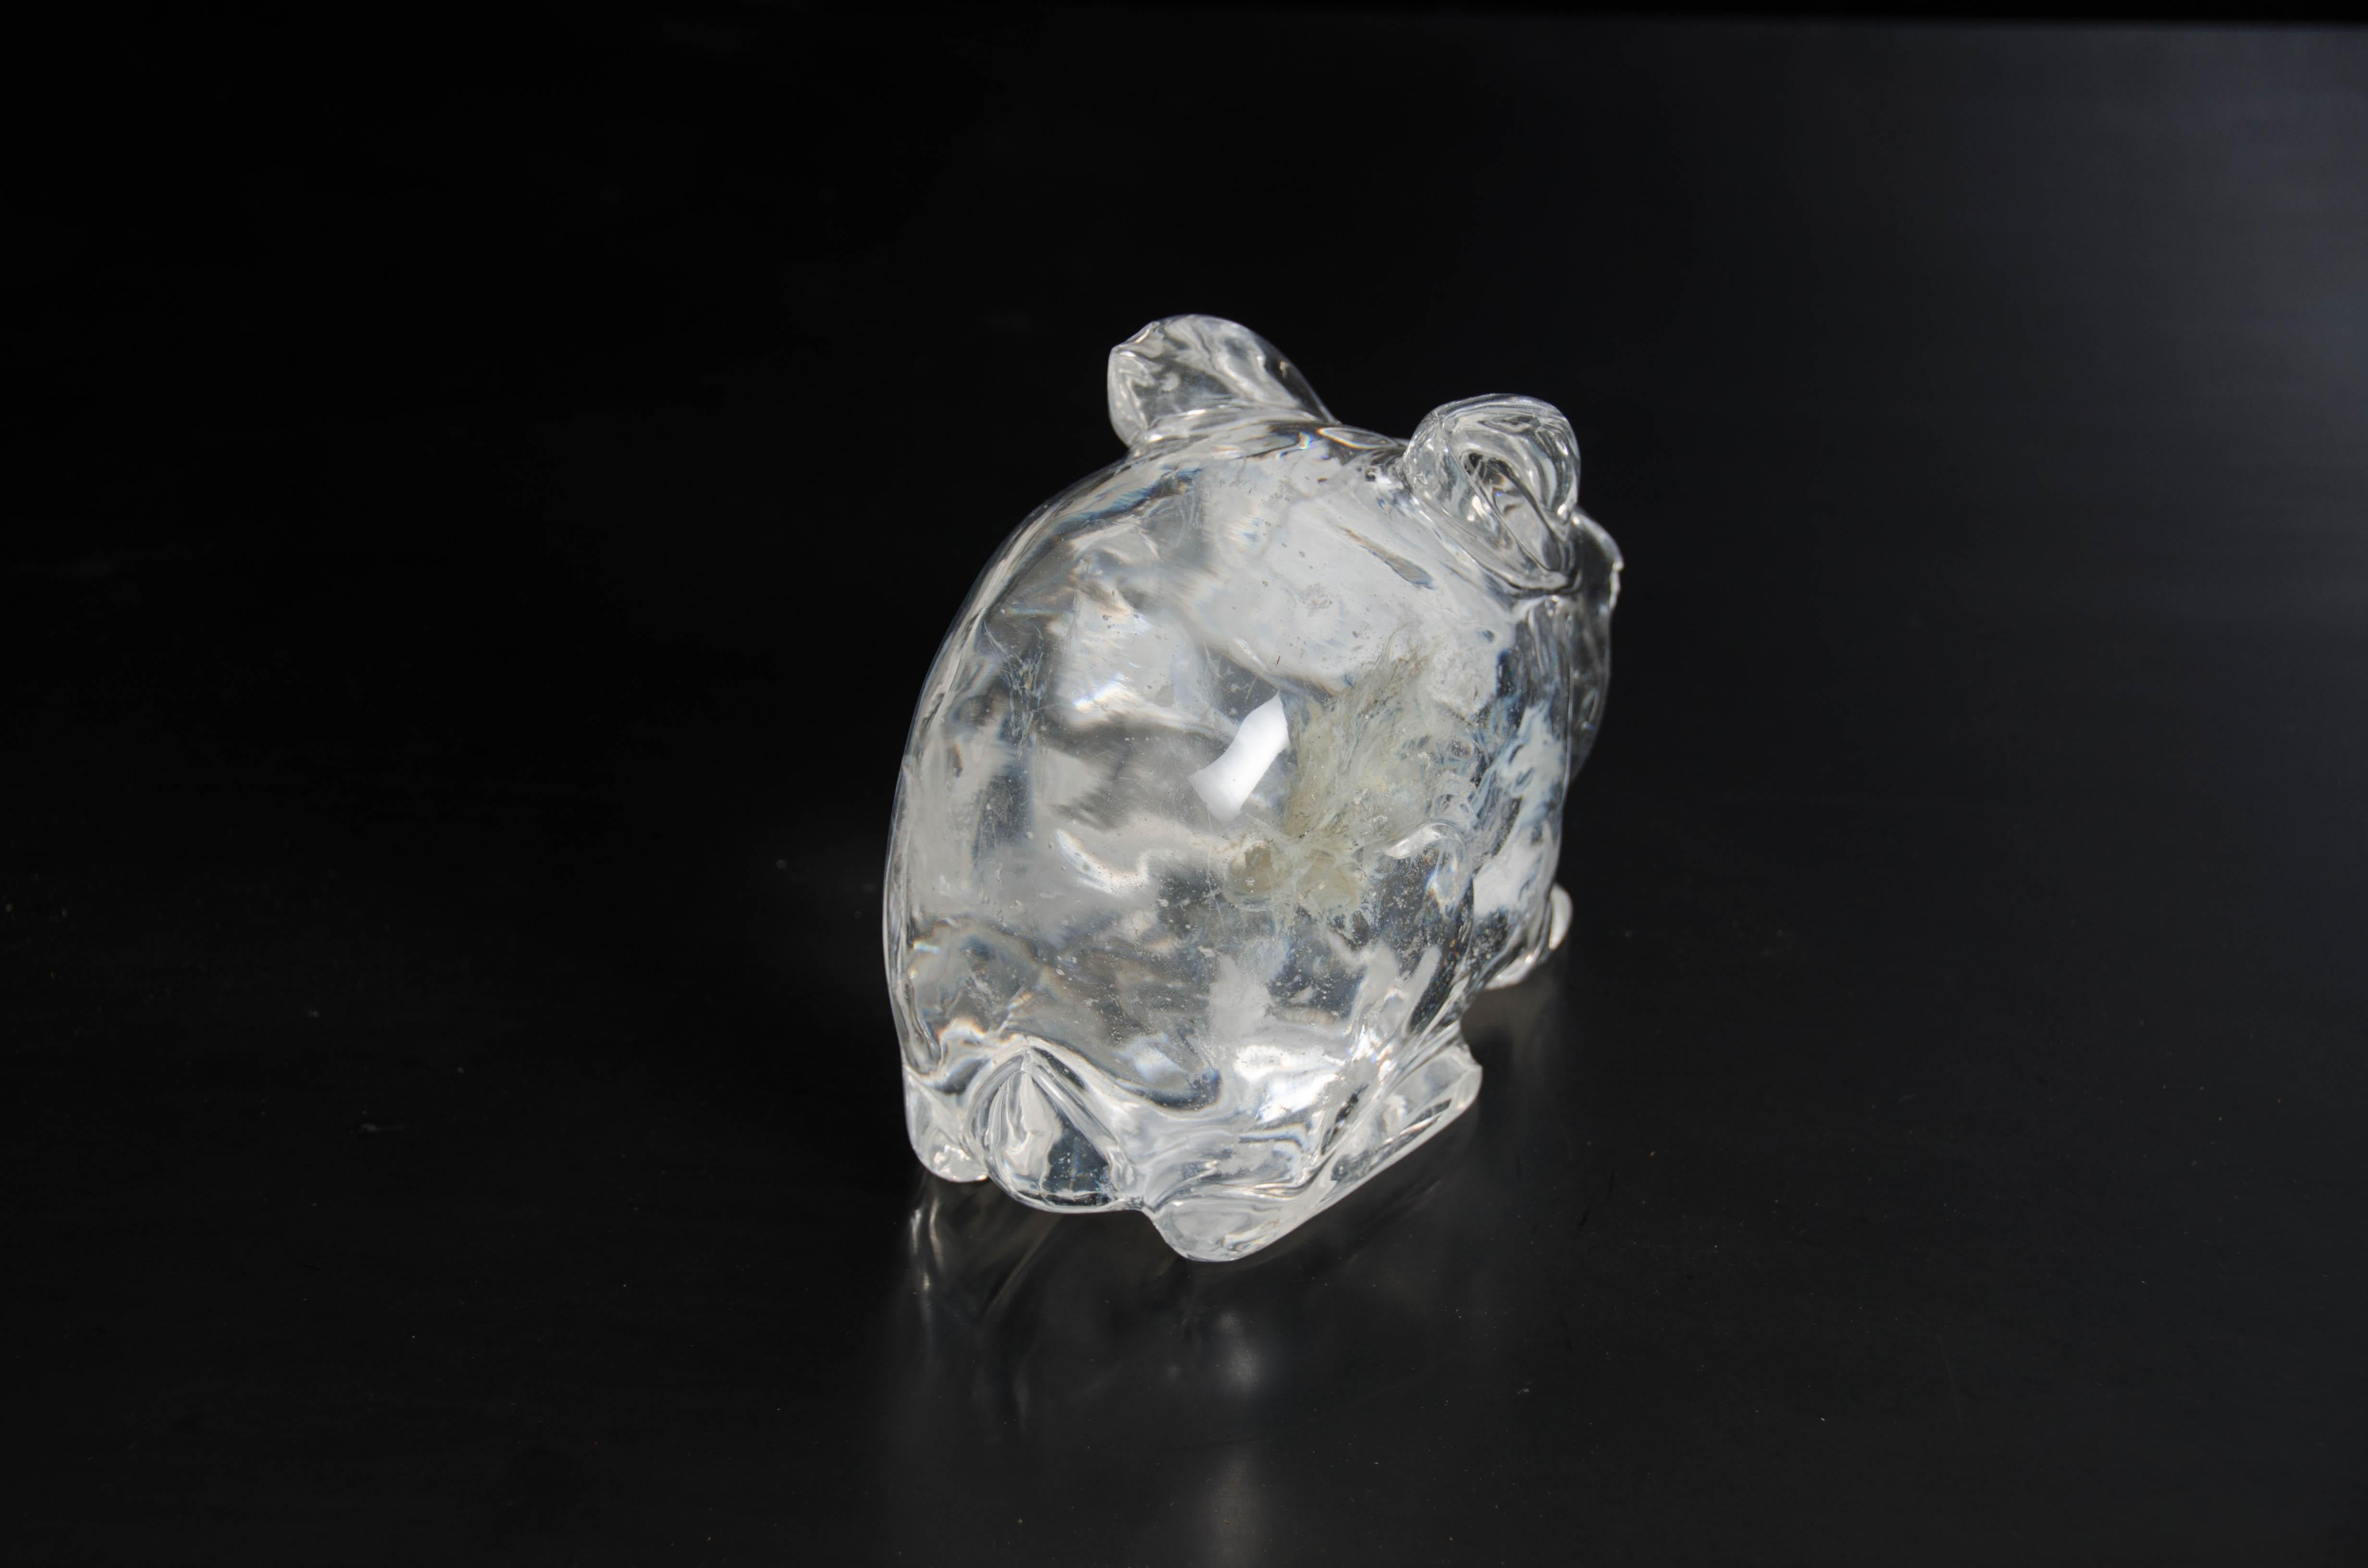 Kaninchen
Kristall
Handgeschnitzt
Kristalleinschlüsse variieren
Limitierte Auflage.
         